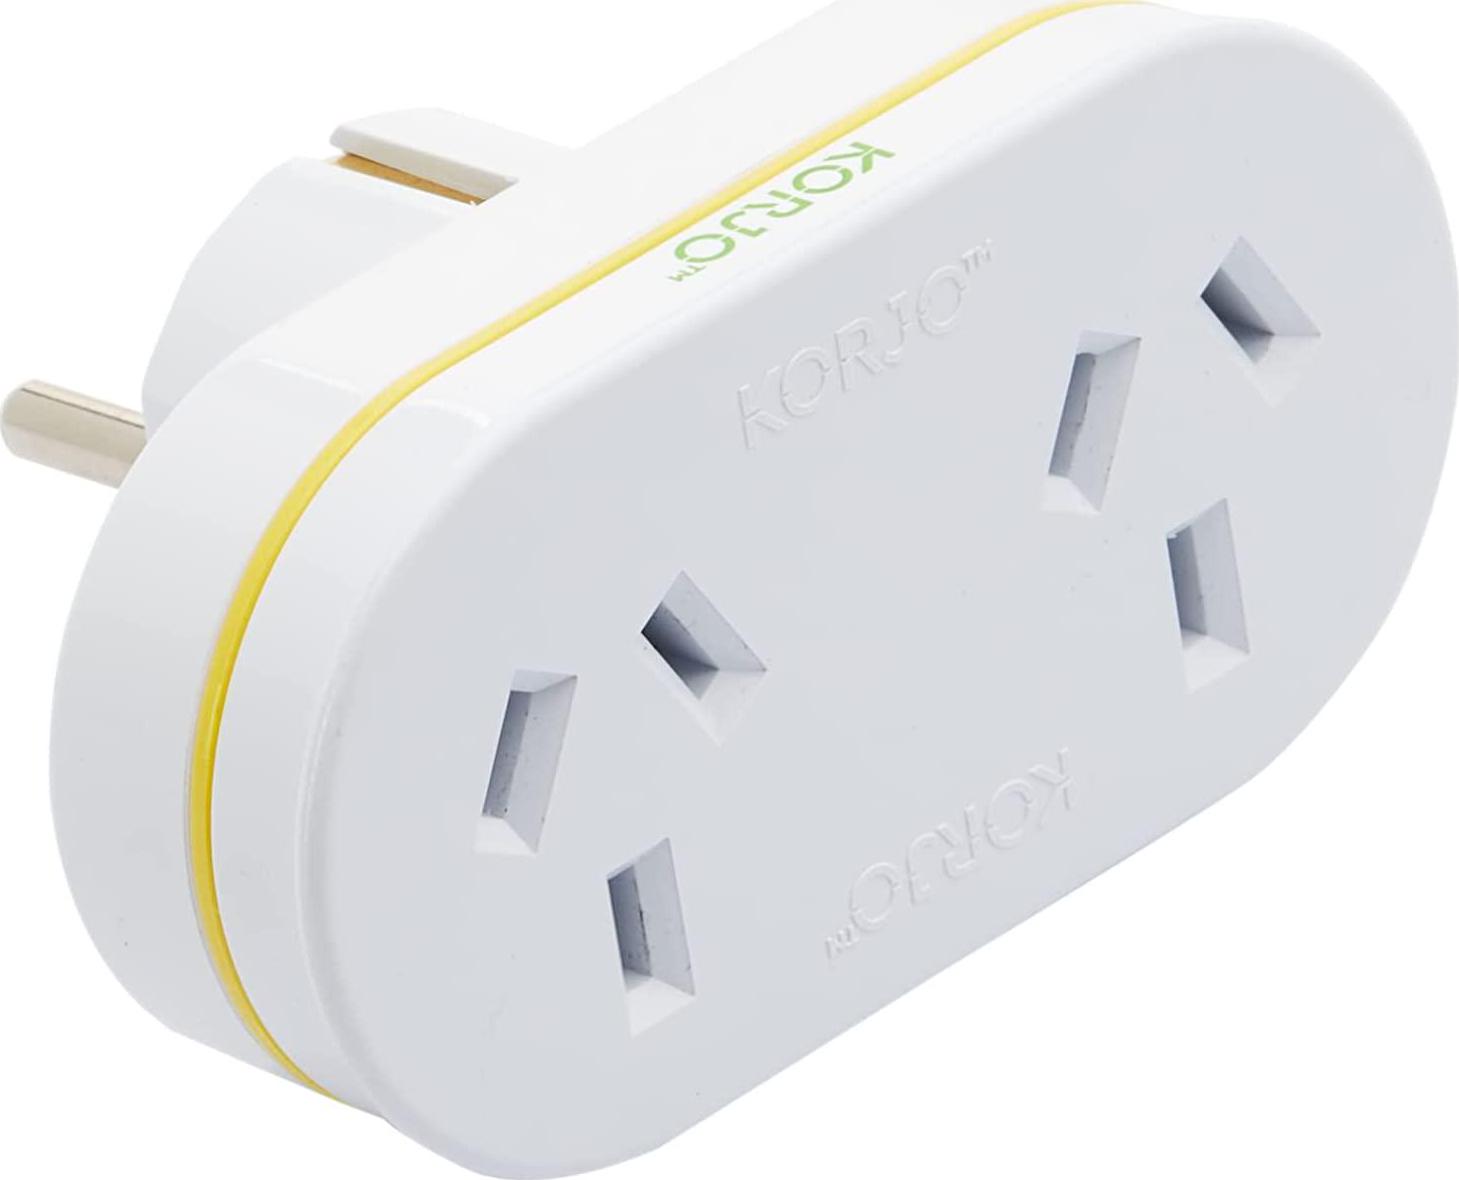 KORJO, Korjo EU Double Power Adapter, 2X AUS/NZ Sockets, Use in Europe, White